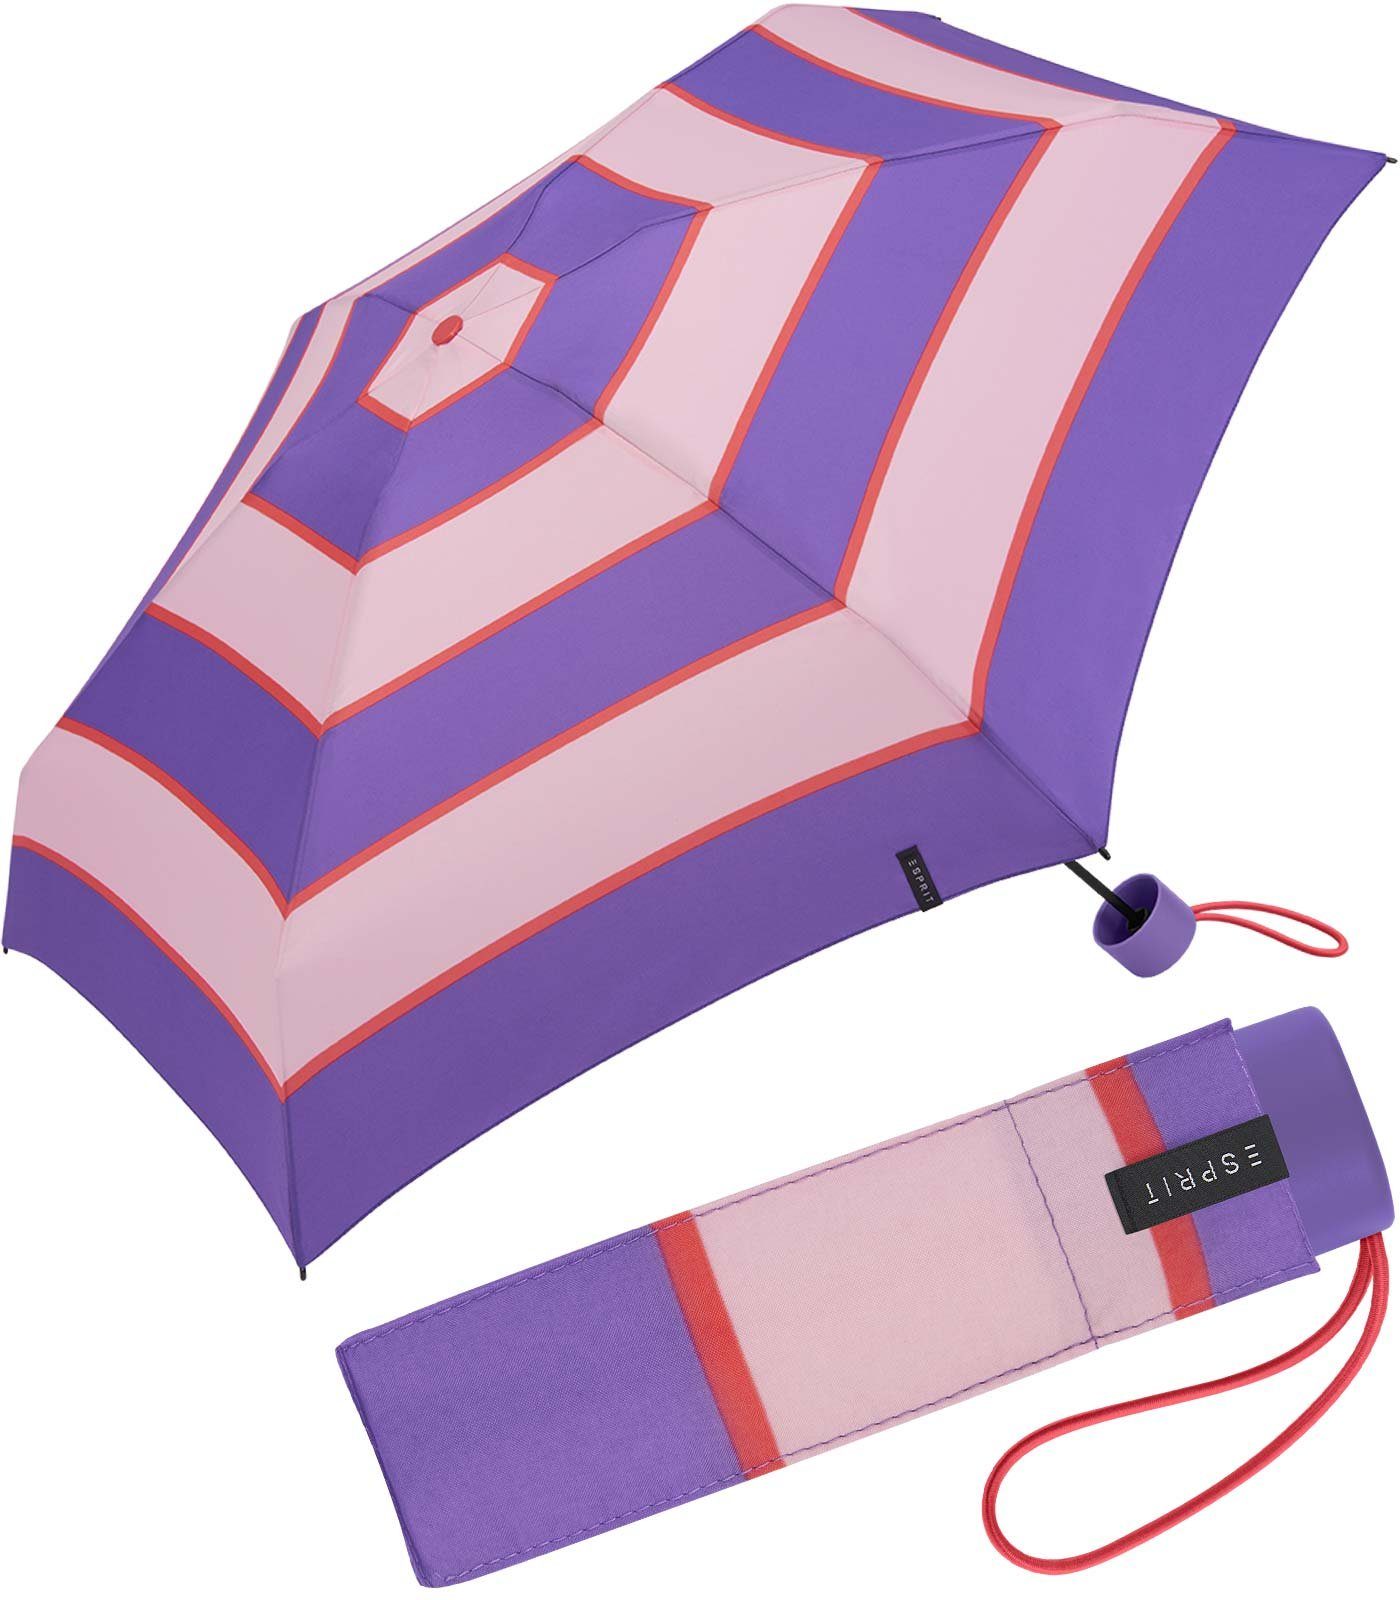 Regenschirm Mini mit lavender winzig lila-altrosa Streifen-Muster Stripe, Taschenregenschirm Petito - deep Collegiate Esprit klein,